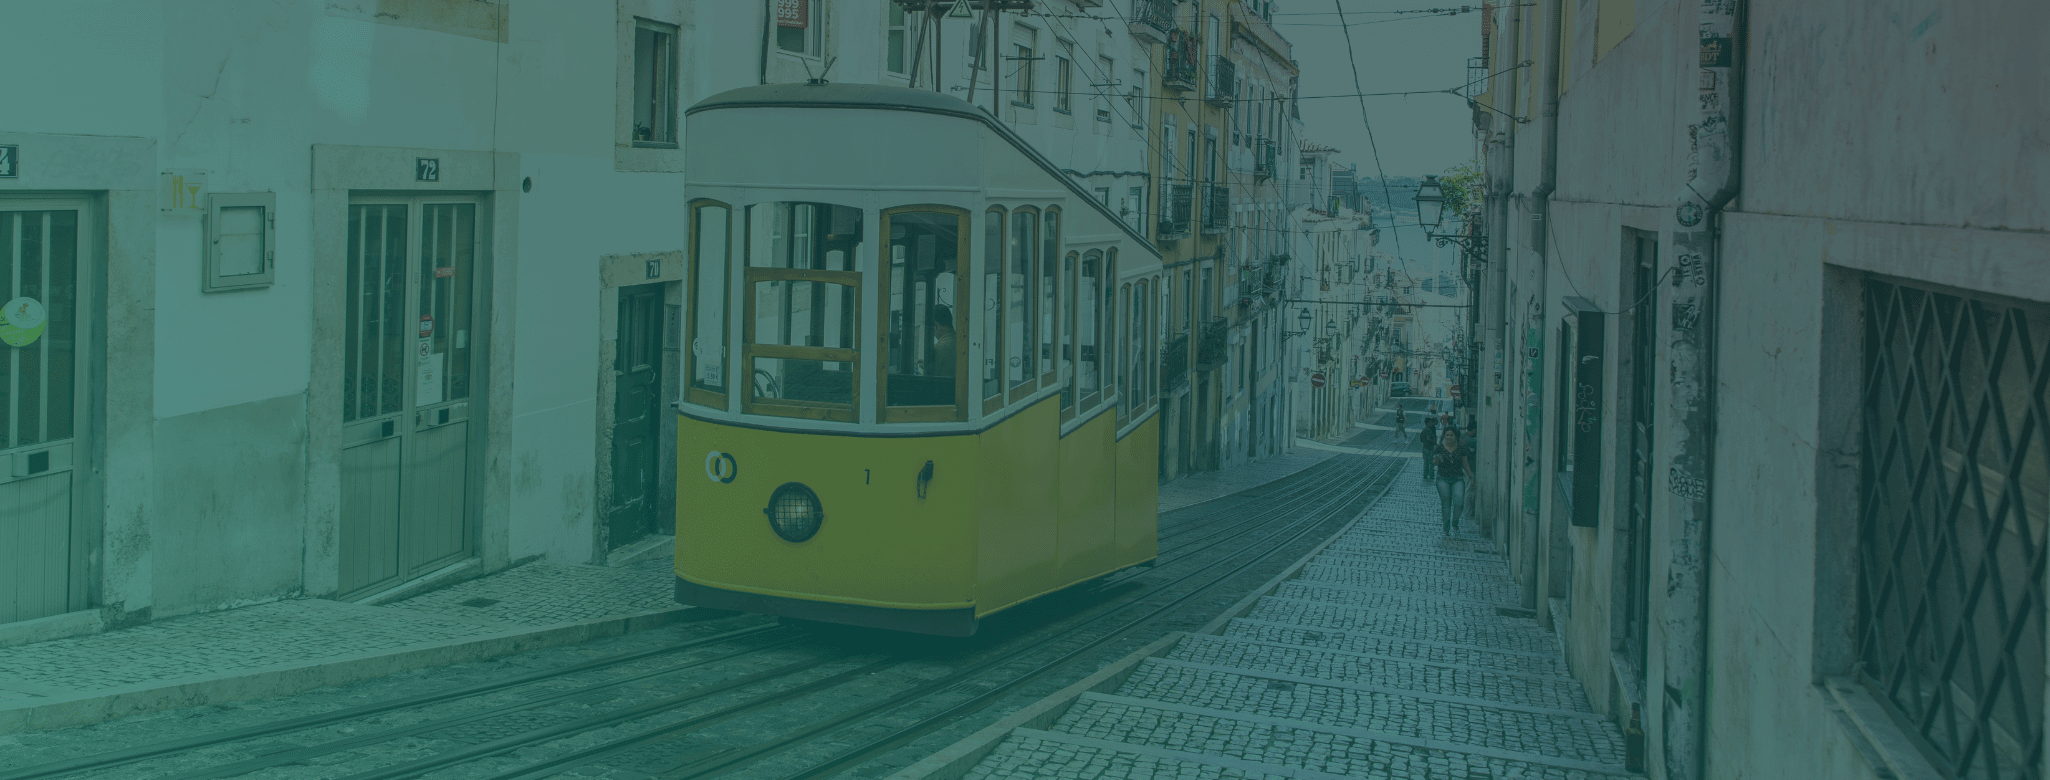 Lisbon Transportation 